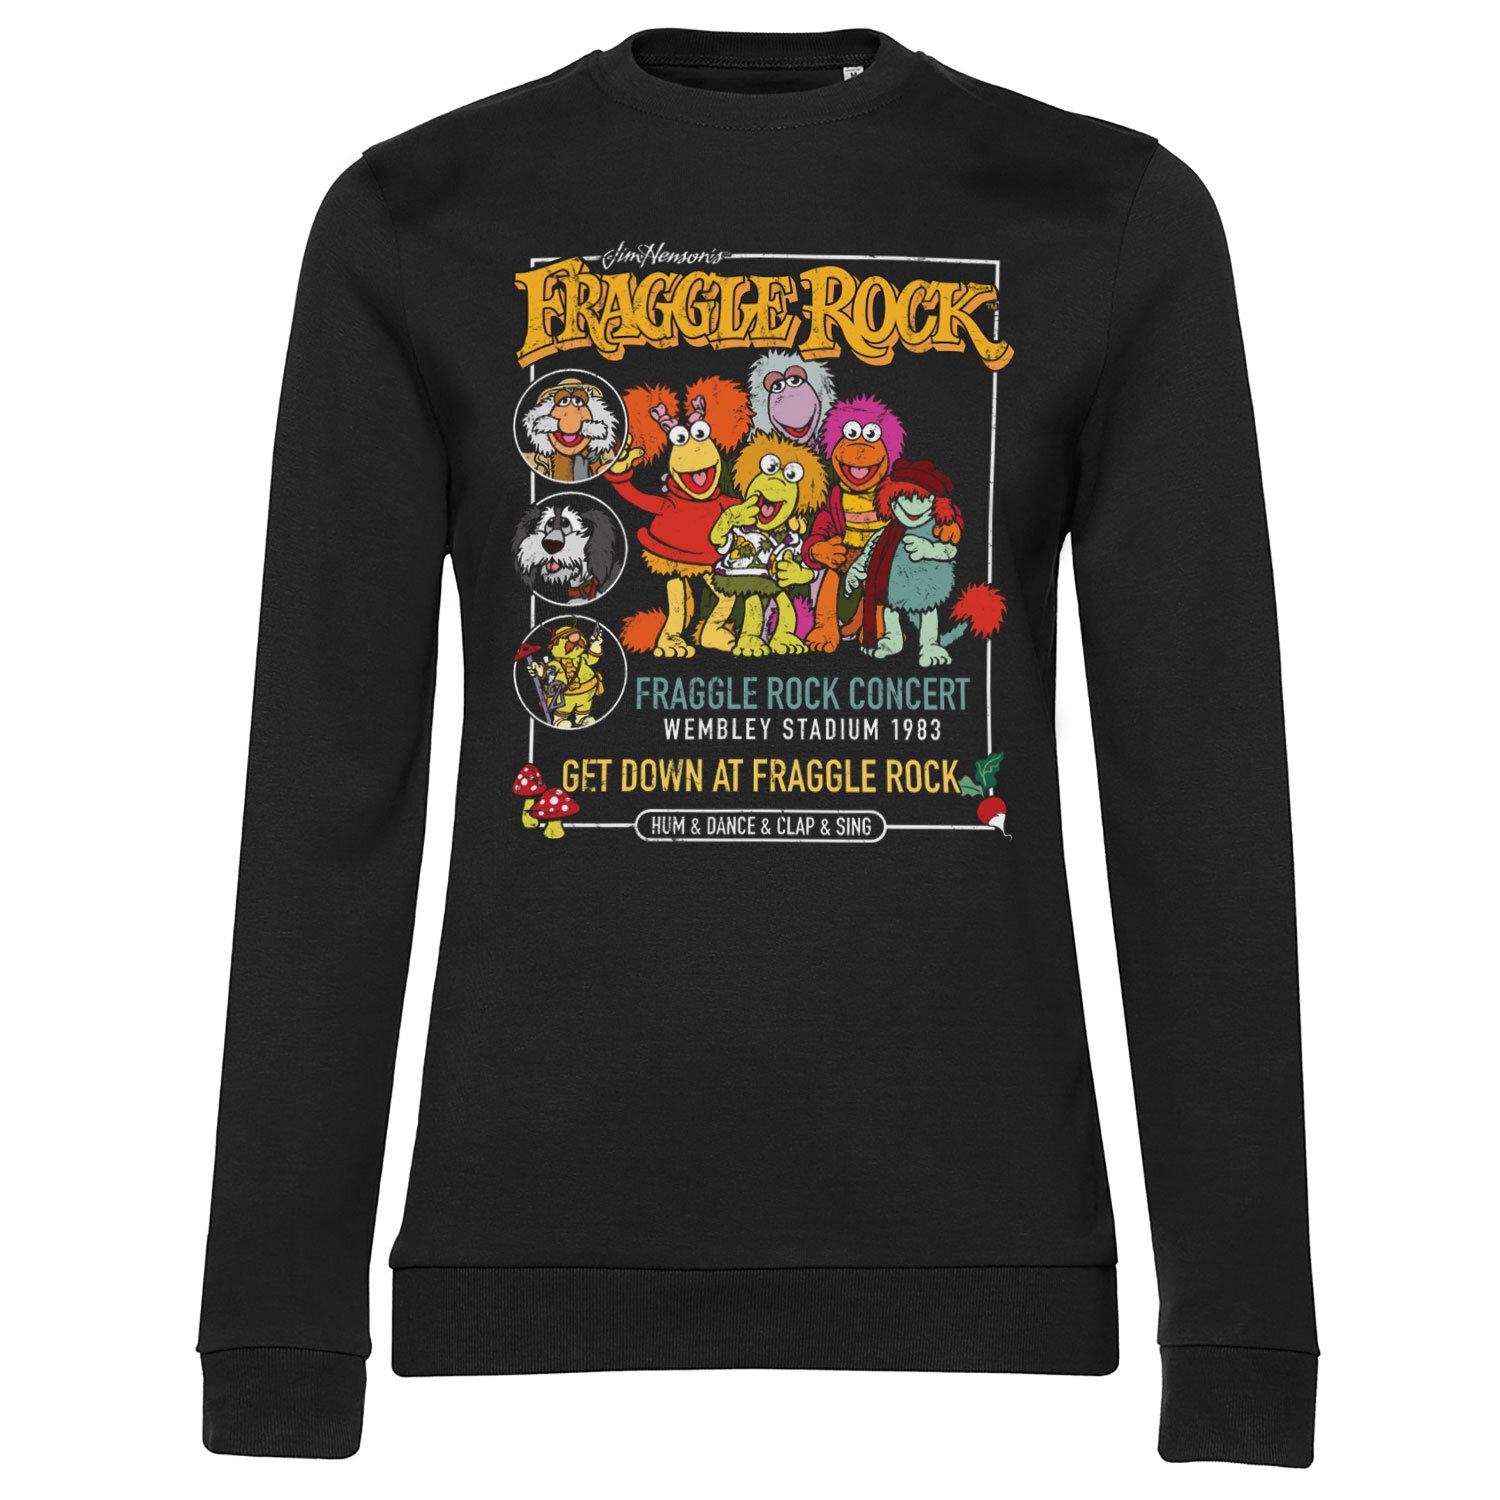 Fraggle Rock Concert Girly Sweatshirt